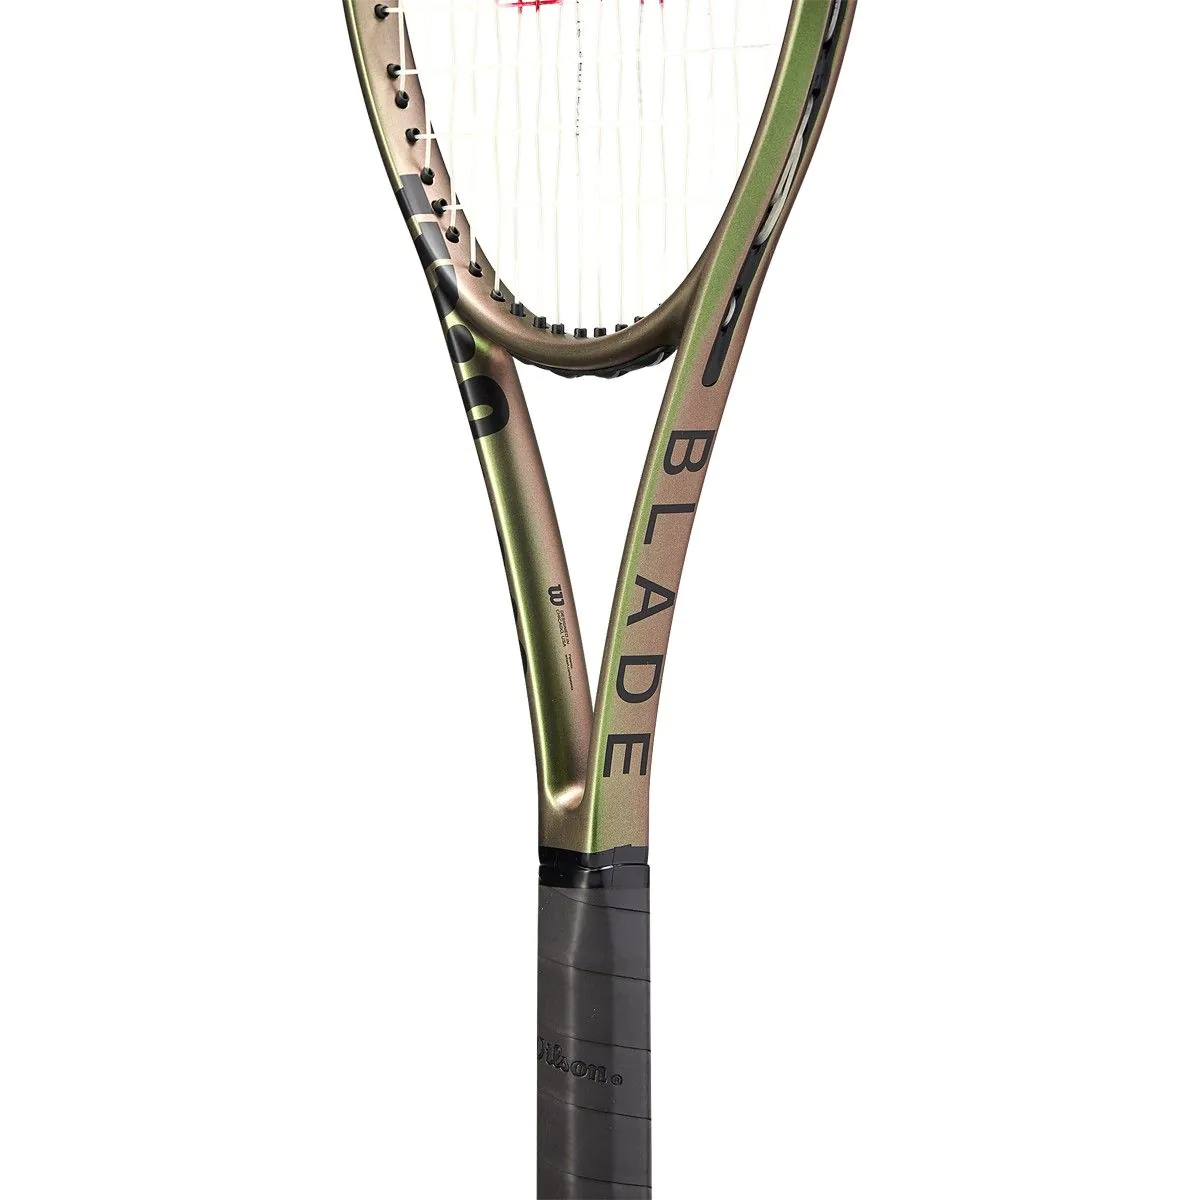 ウィルソン ブレード 98エス ブイ8 2021年モデル(G2)/WILSON BLADE 98S V8 2021 テニスラケット - スポーツ別